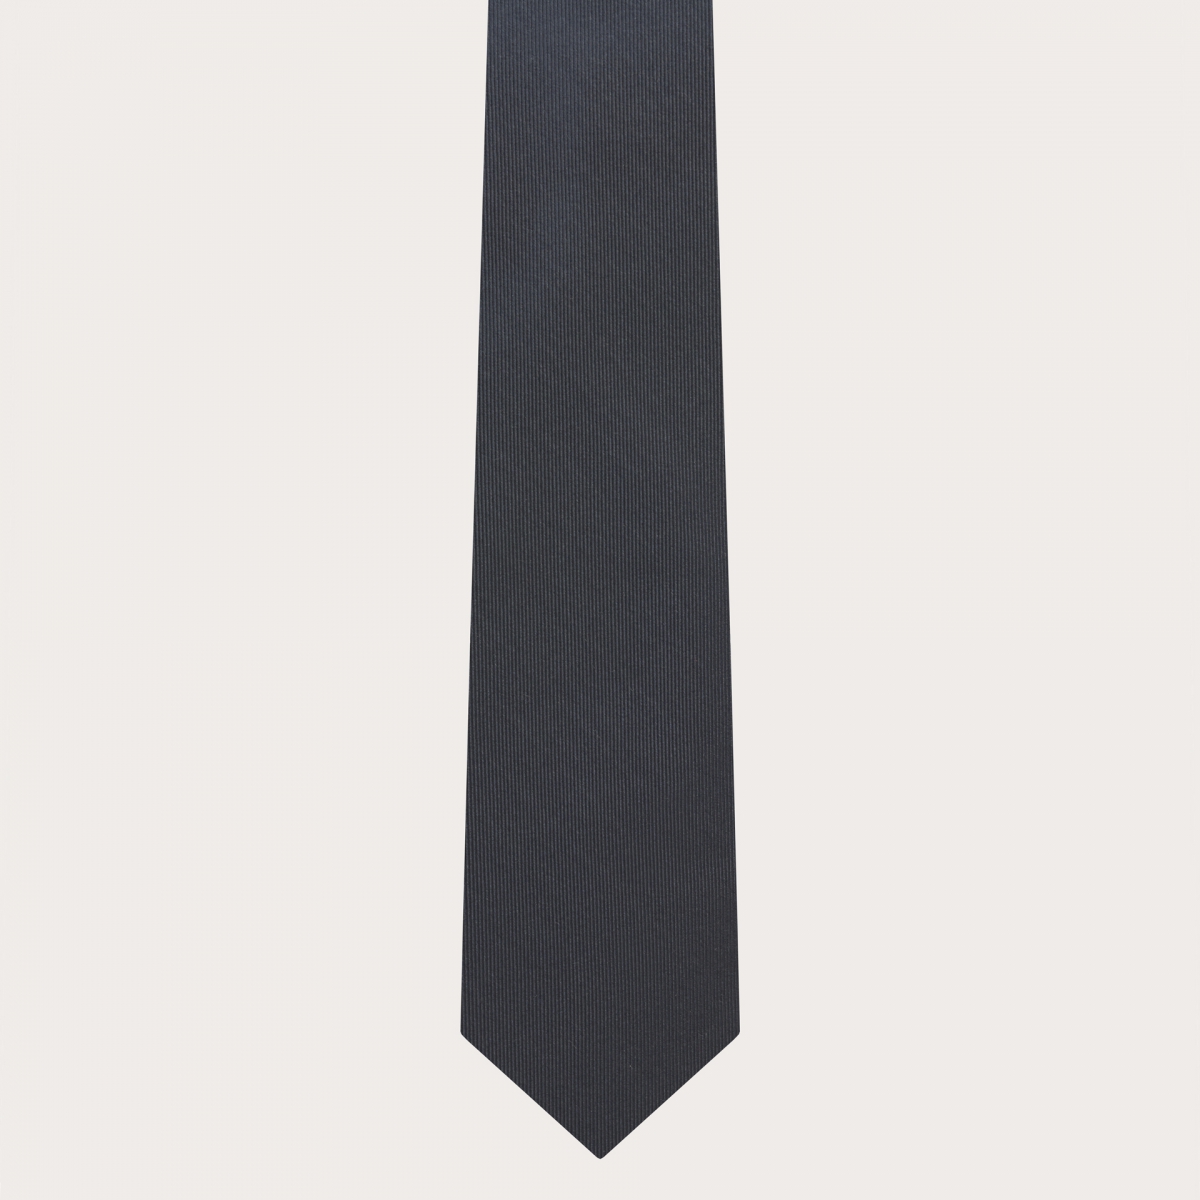 Anthracite grey necktie in jacquard silk